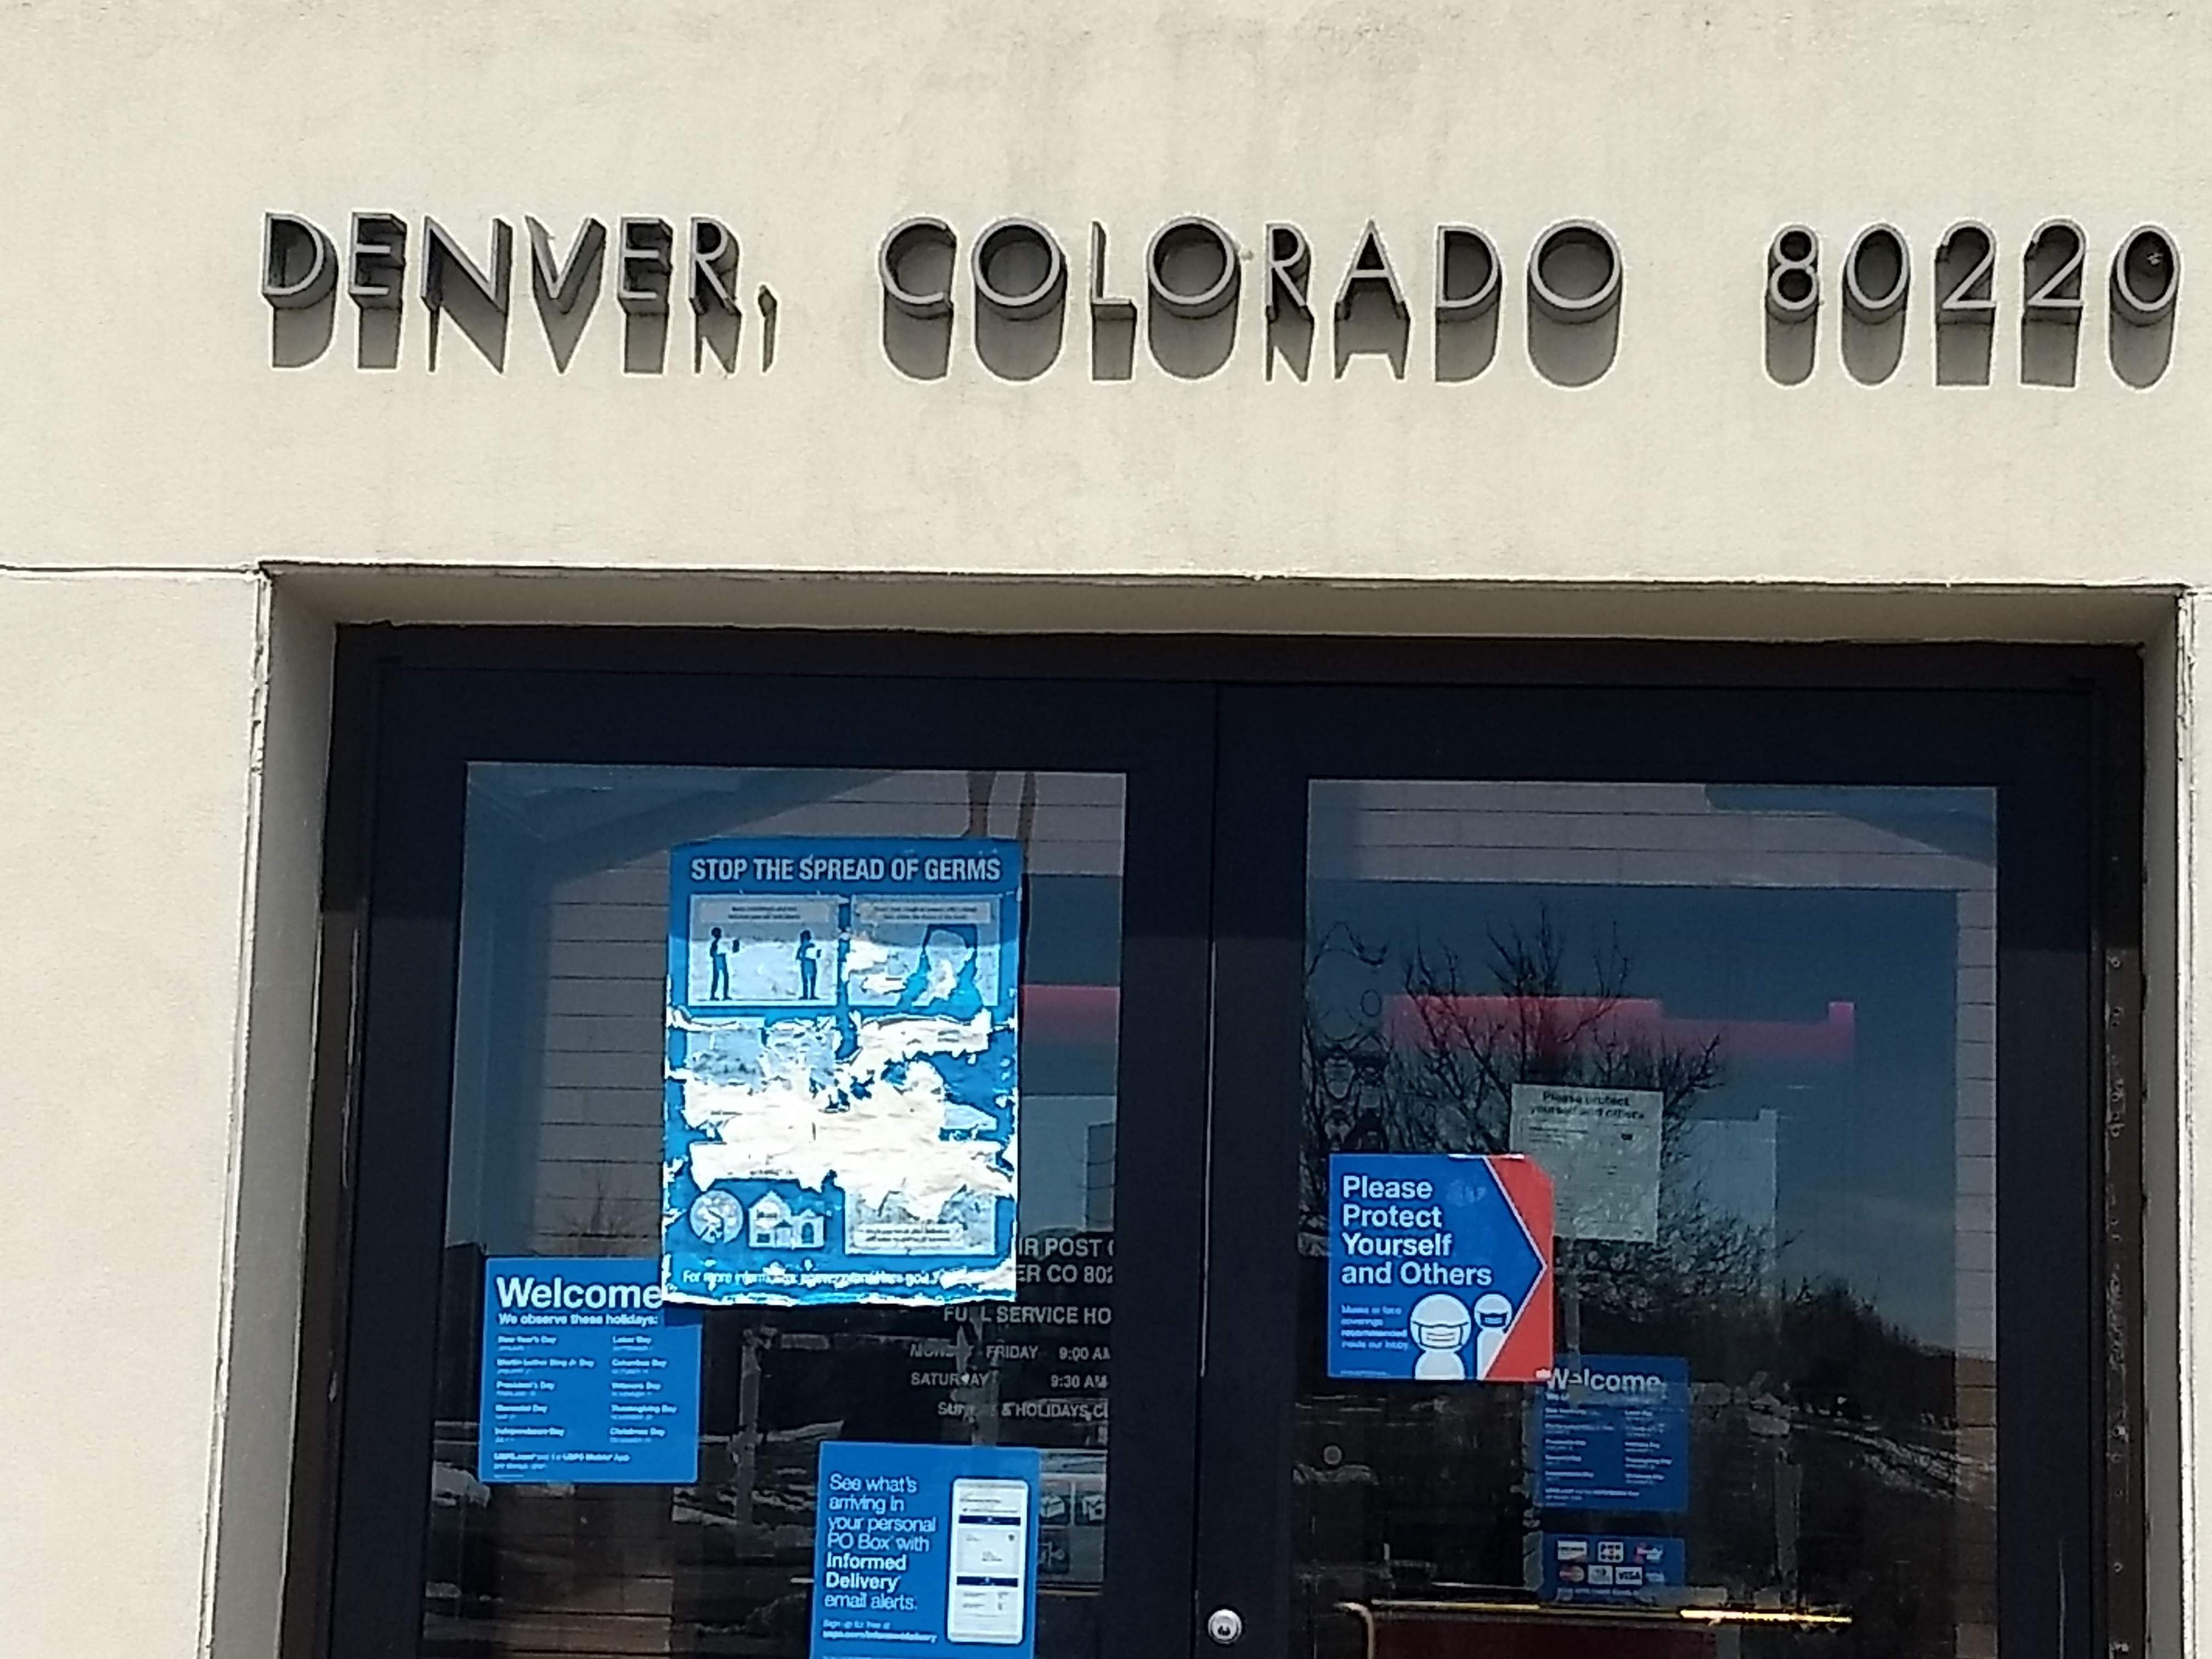 Post Office, Denver, CO 80220